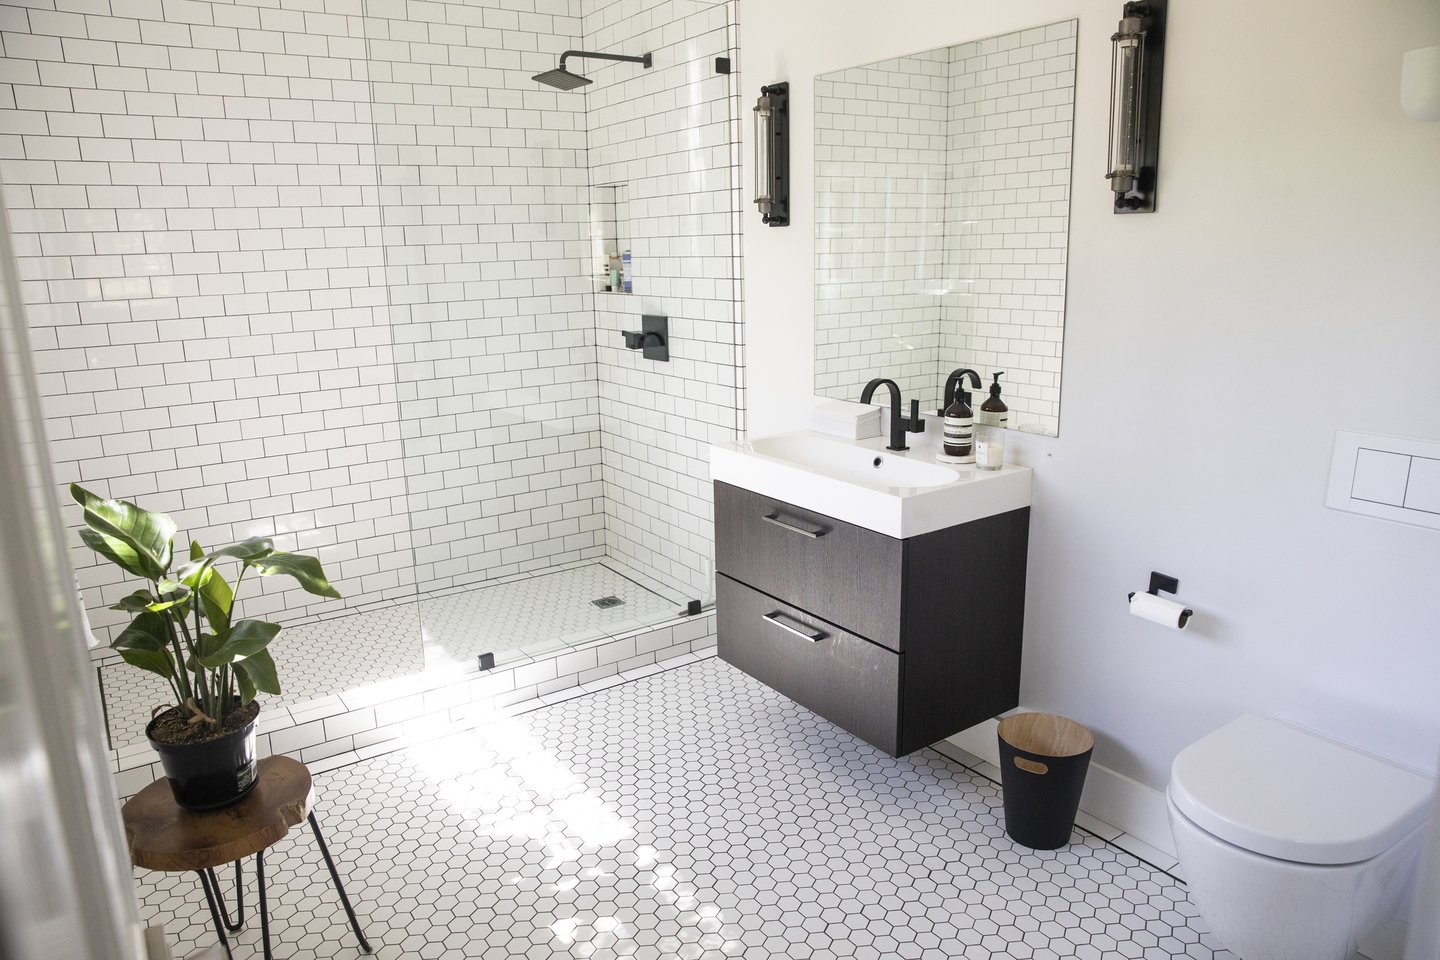 4 Bathroom Shower Remodel Ideas for 2020 | Millionacres